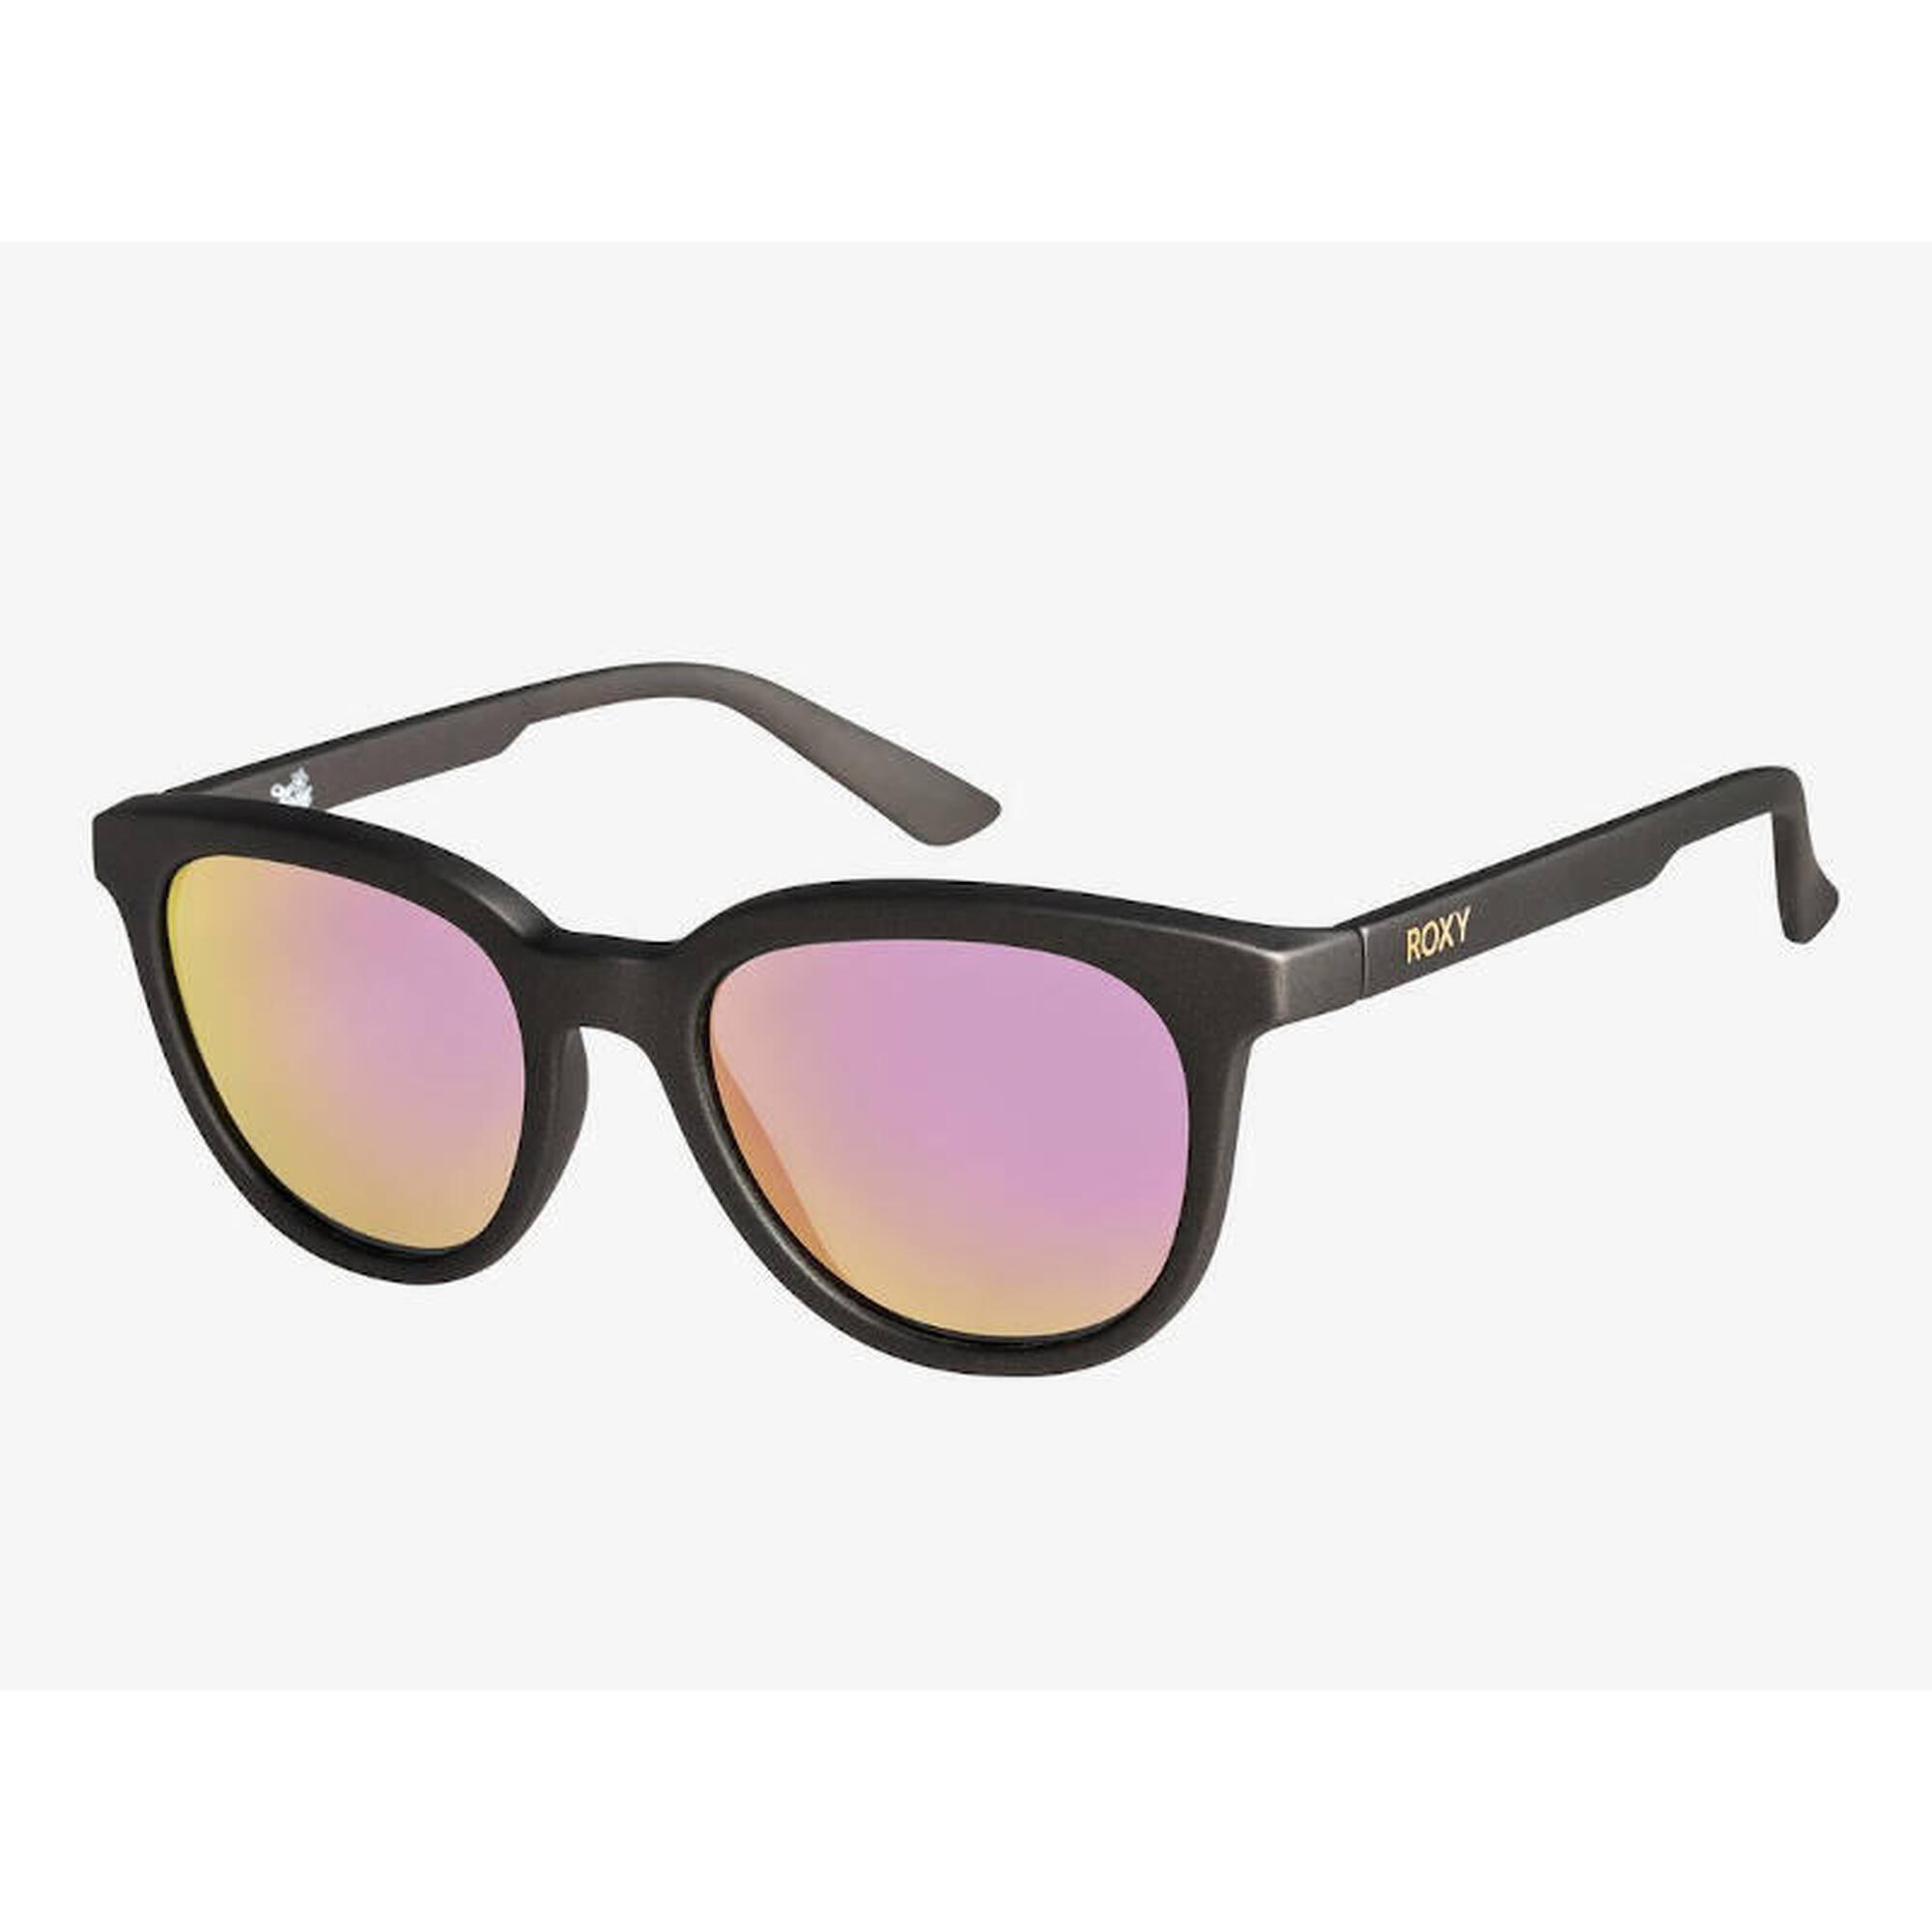 Okulary Roxy przeciwsłoneczne Tiare J XSSN Matte Grey/Flash Rosegold